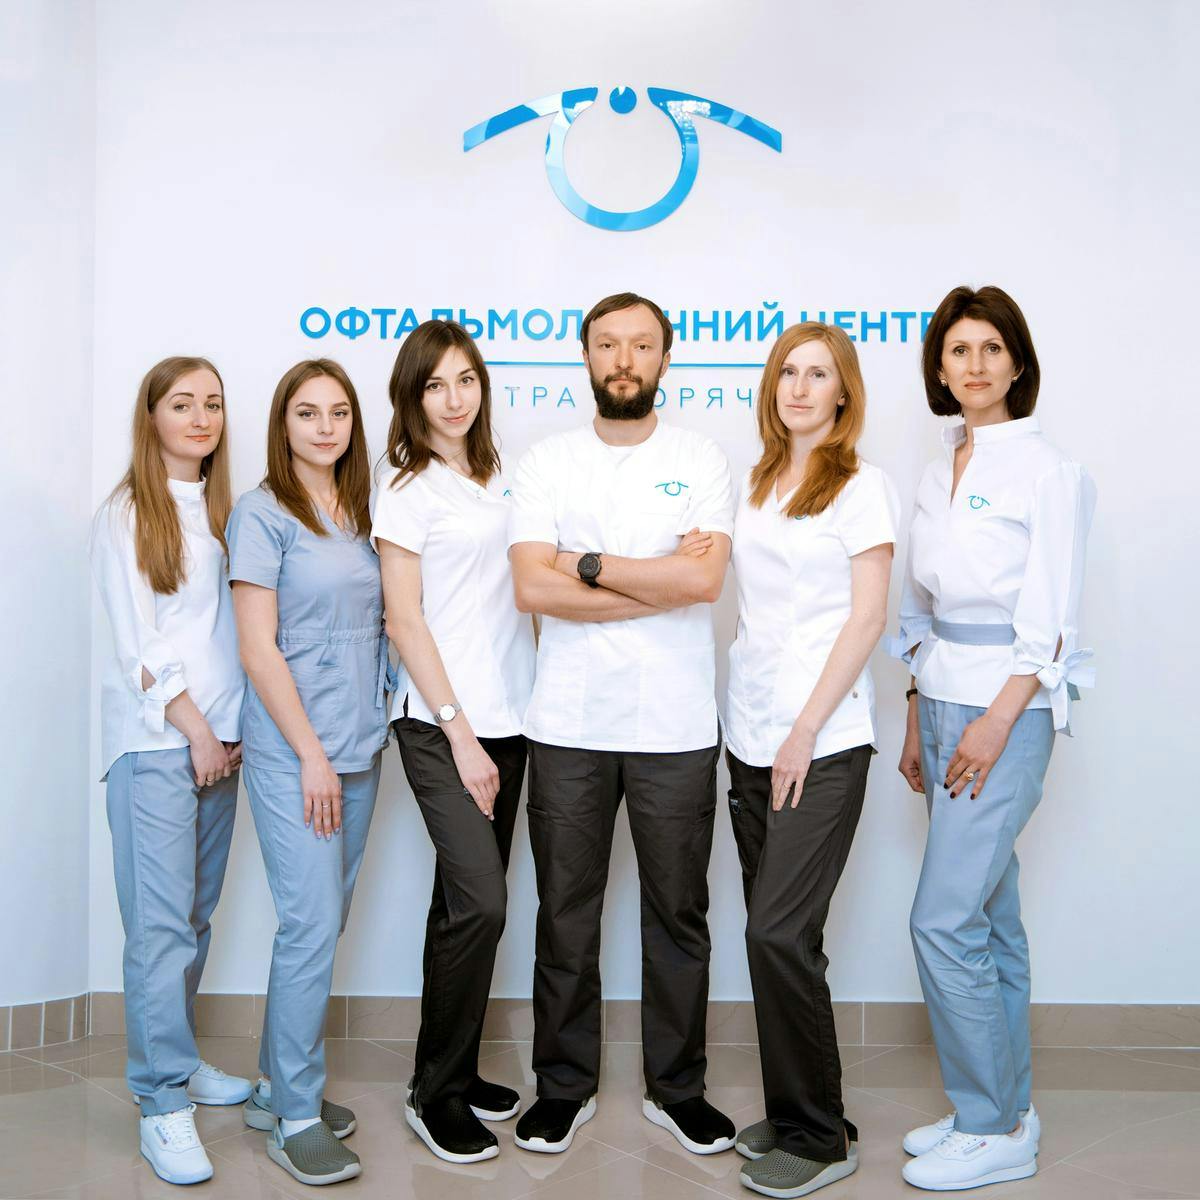 Фахівці офтальмологічного центра Дмитра Горячева 